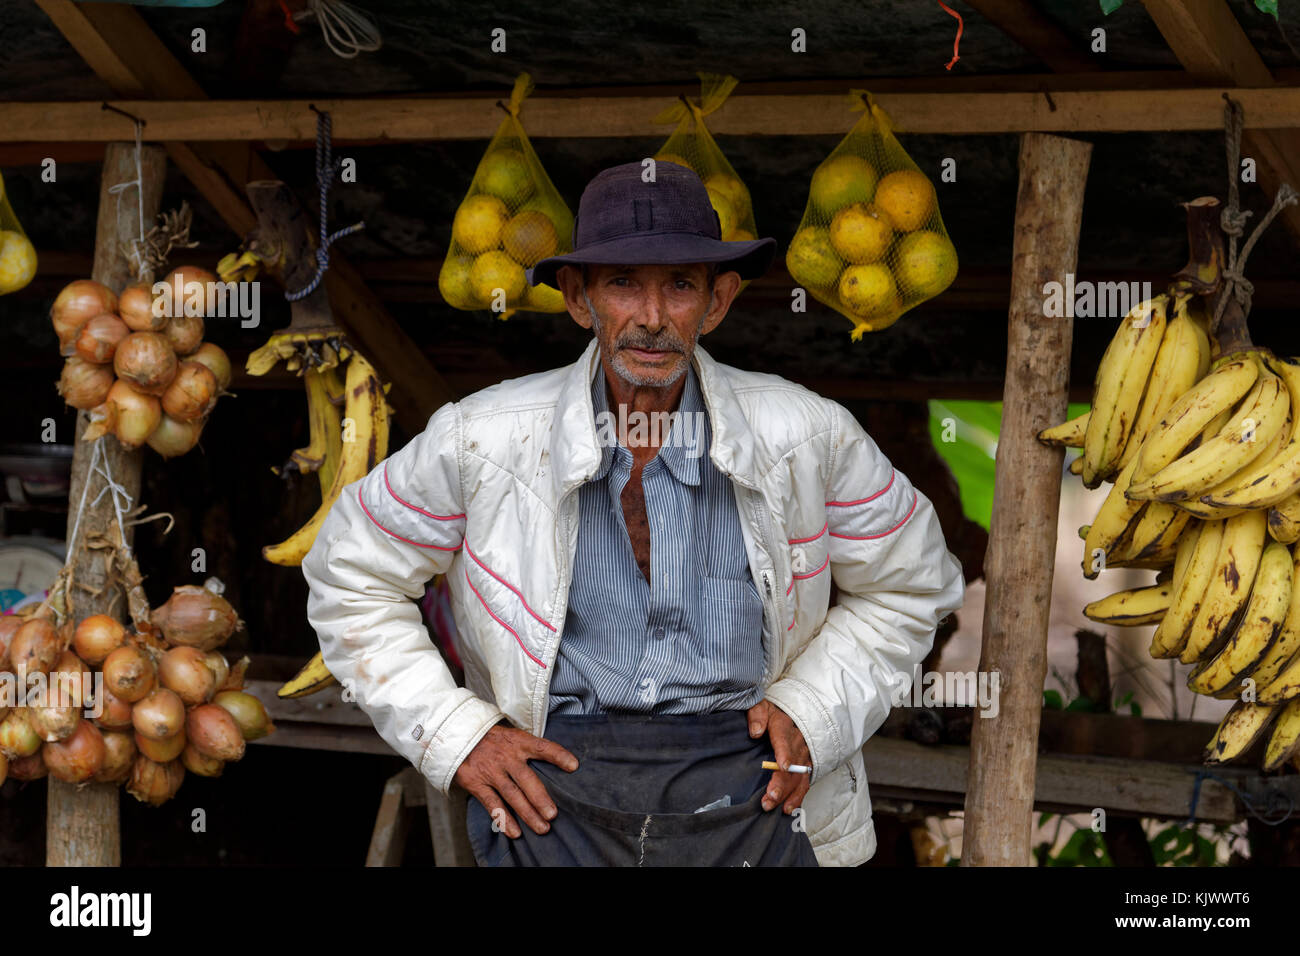 Un anciano vende frutas y verduras frescas en la calle. Aunque su tienda parecía muy pobre, el hombre era muy amable. Compré plátanos y pedí hacer una foto, lo que él permitió. Se rió cuando vio el resultado. Foto de stock